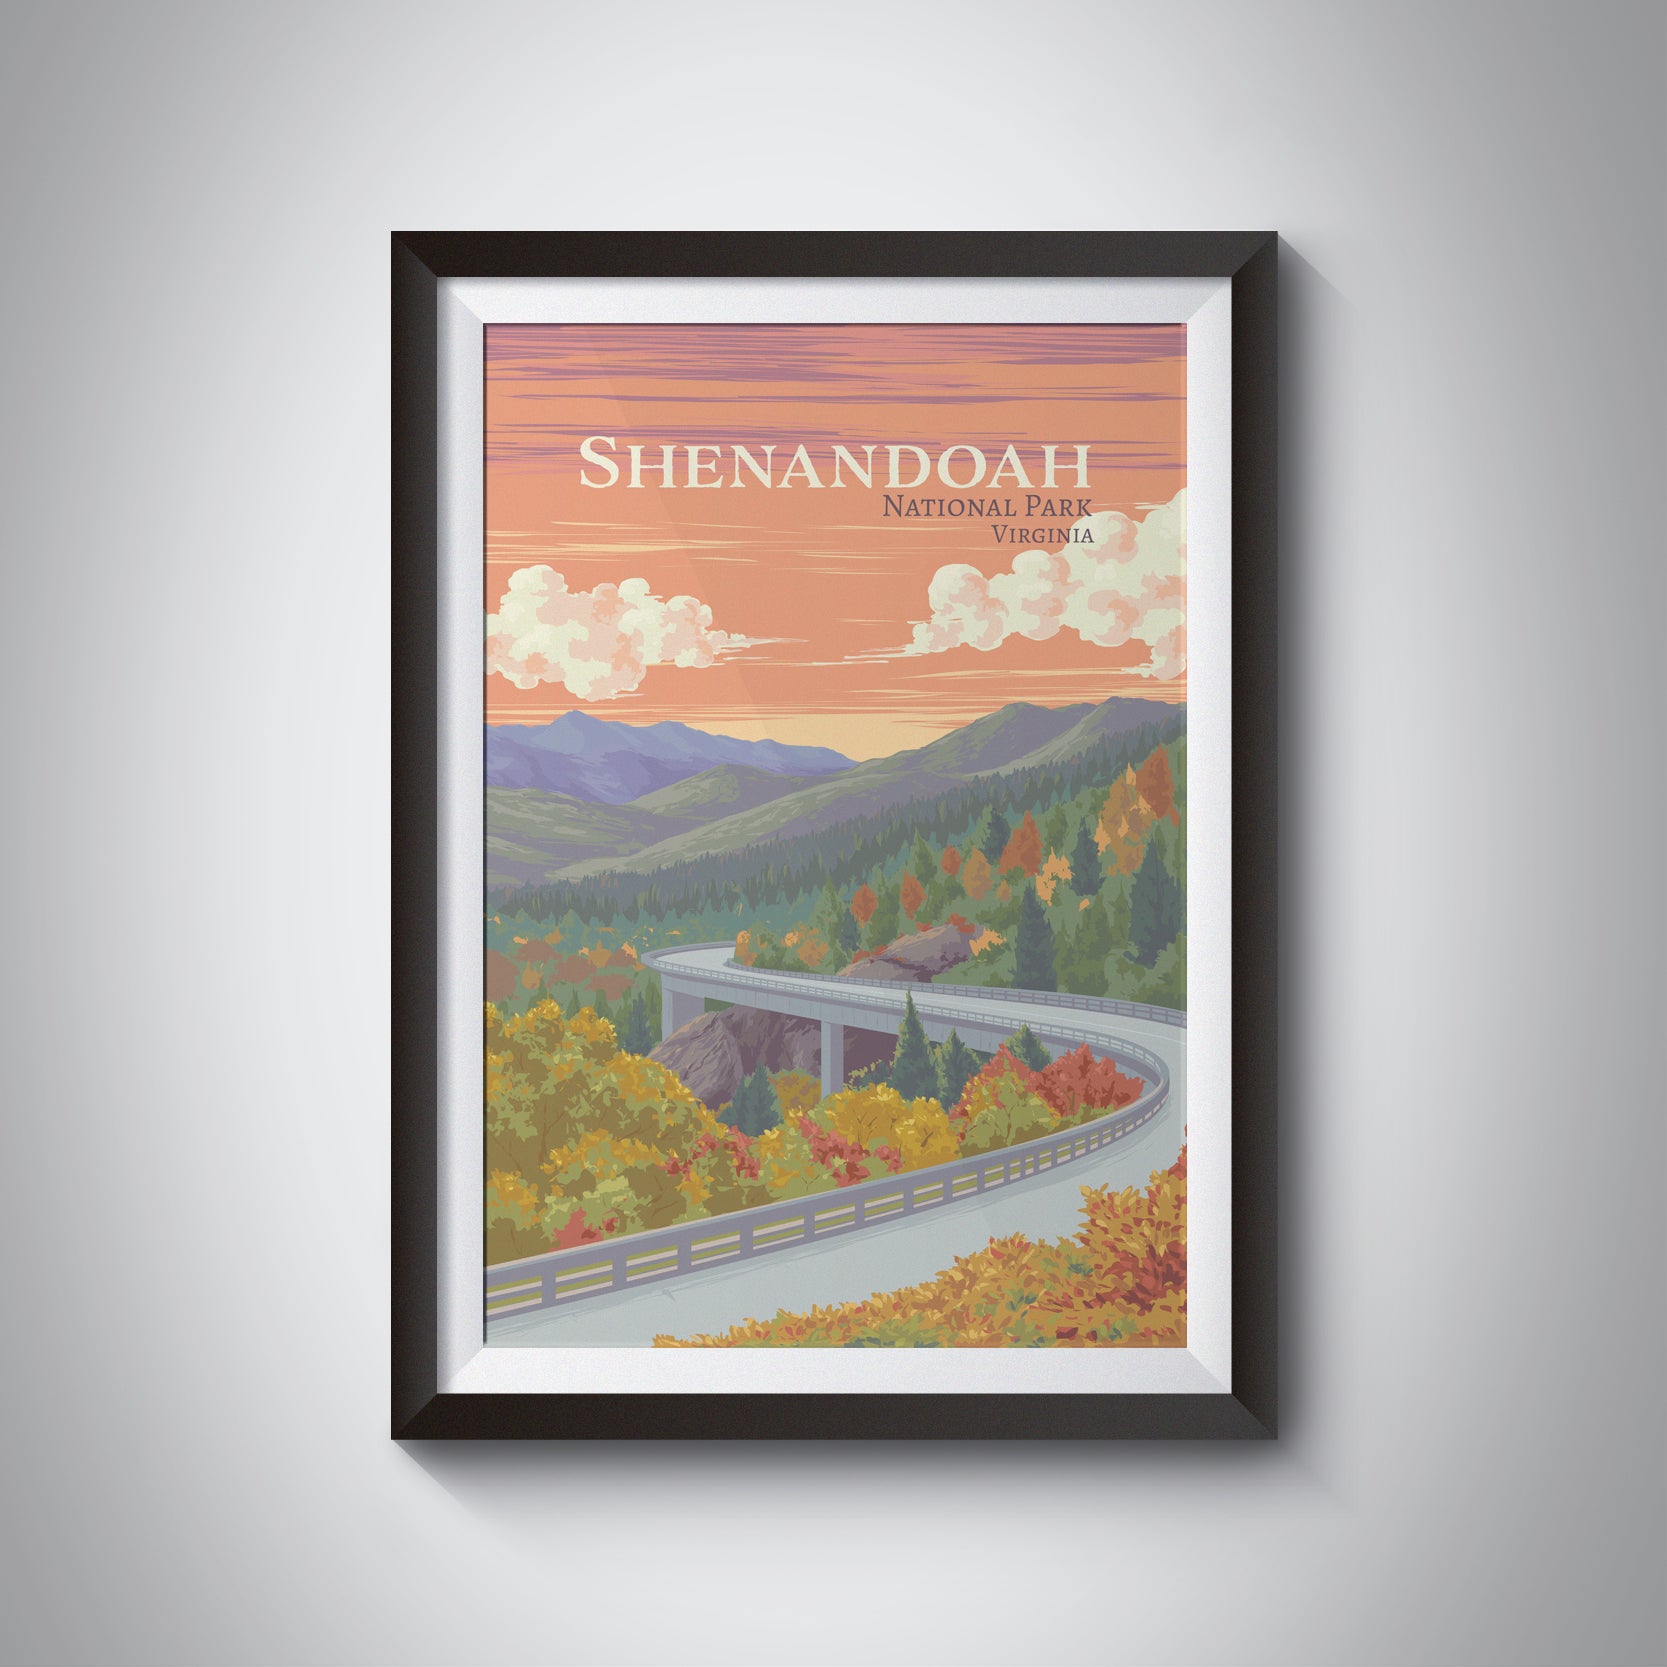 Shenandoah National Park Travel Poster